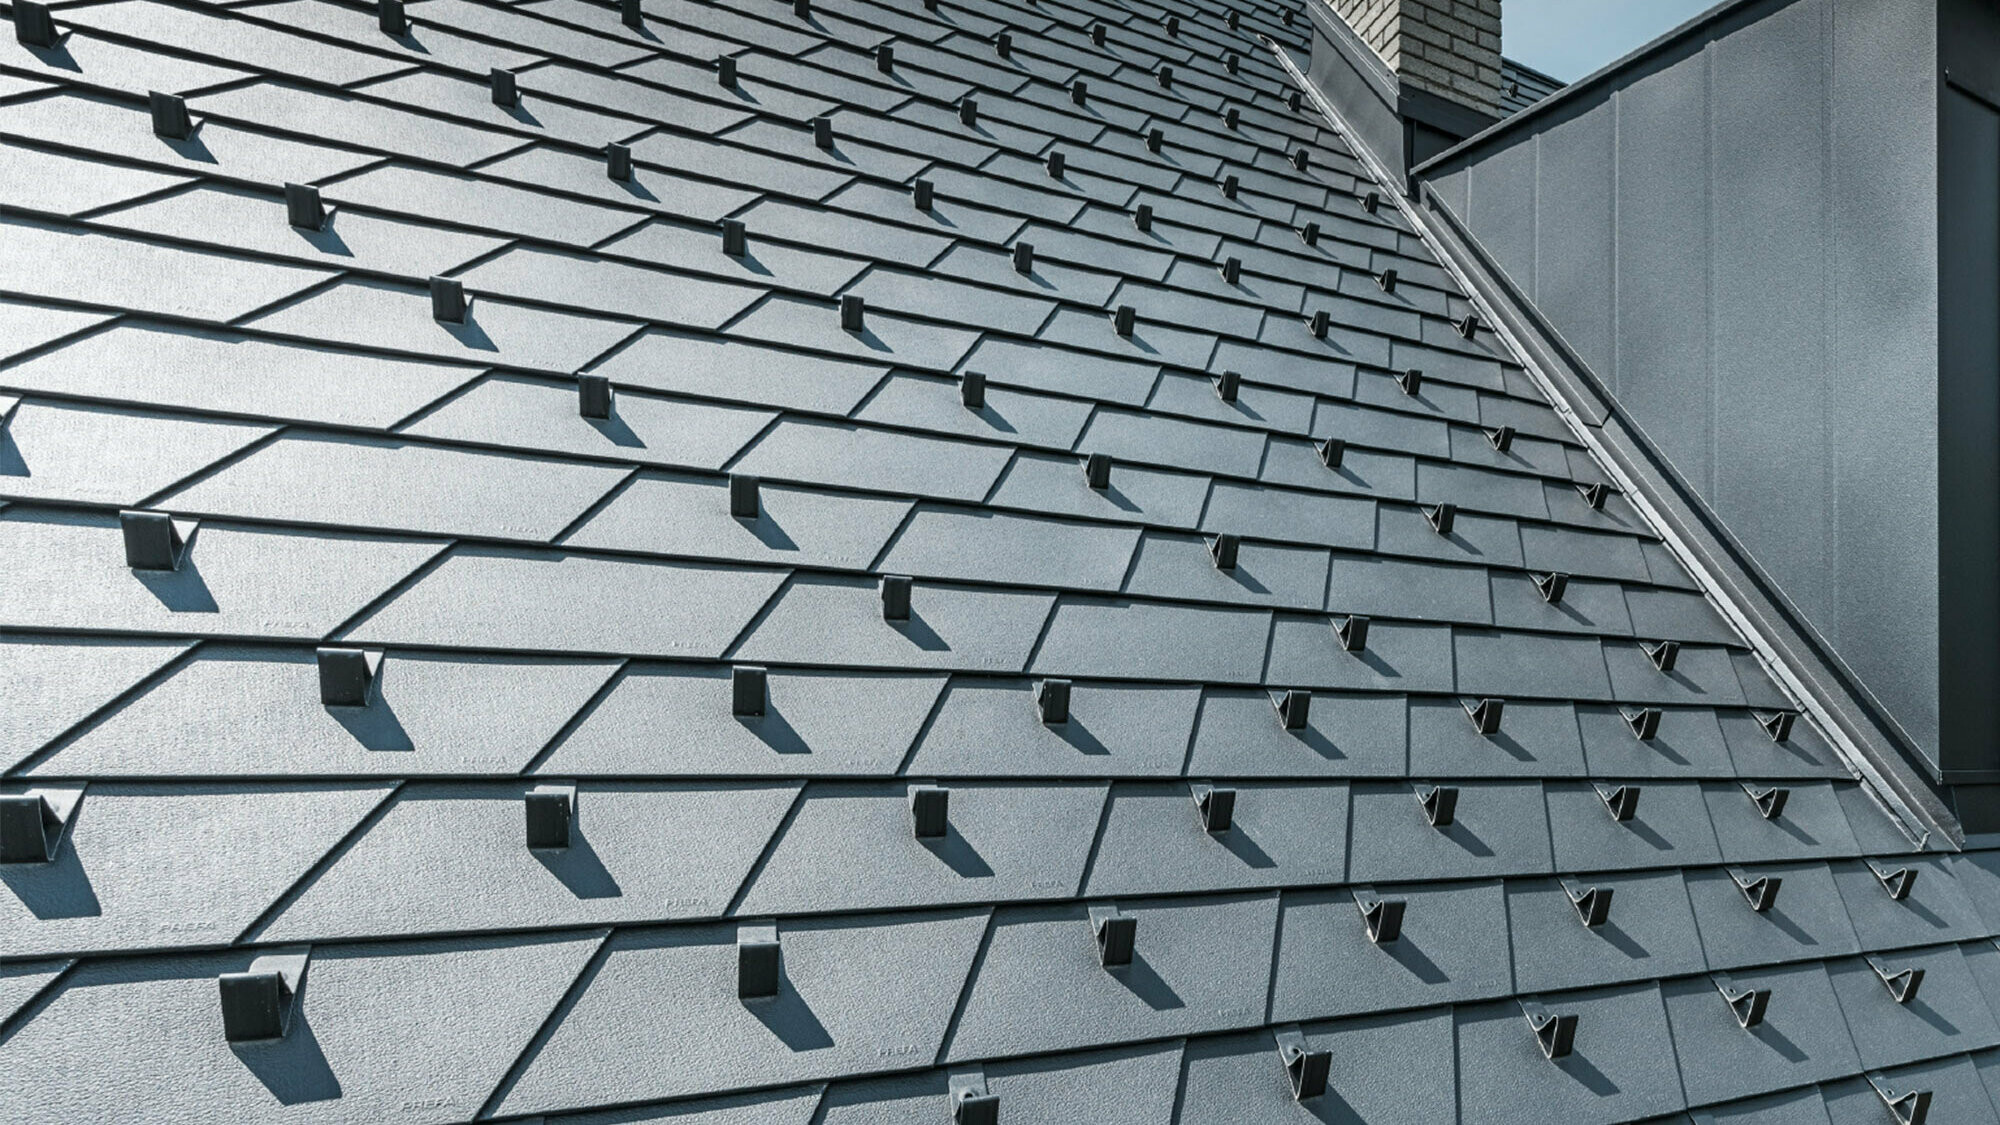 Toit rénové à l'aide de bardeaux de toiture PREFA dans la couleur P.10 noir avec arrêts de neige, lucarne revêtue d'aluminium PREFA